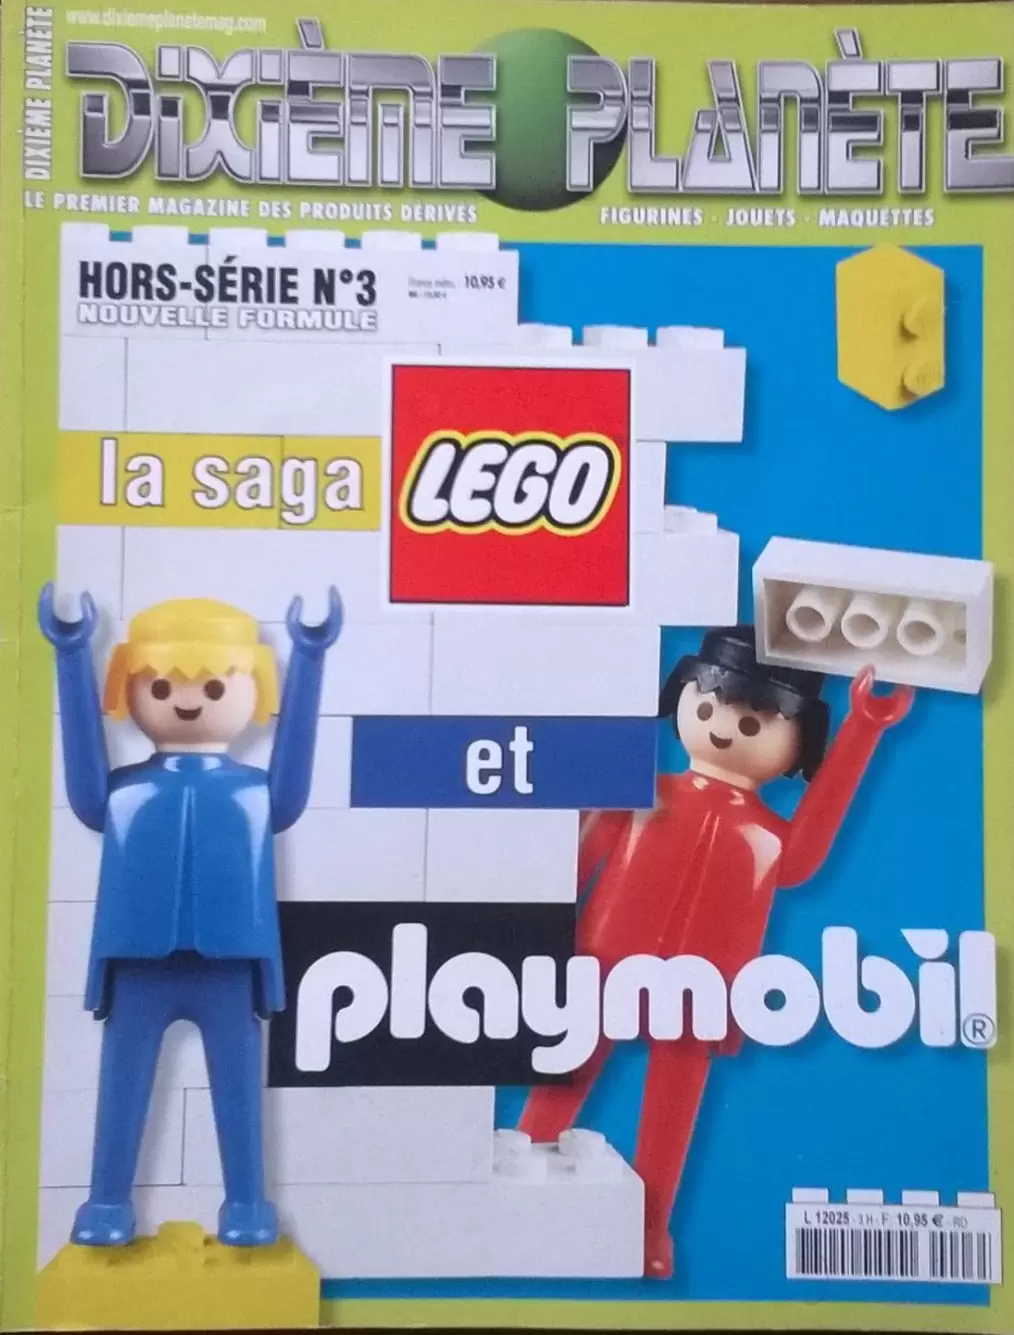 Dixième Planète - La saga LEGO et Playmobil